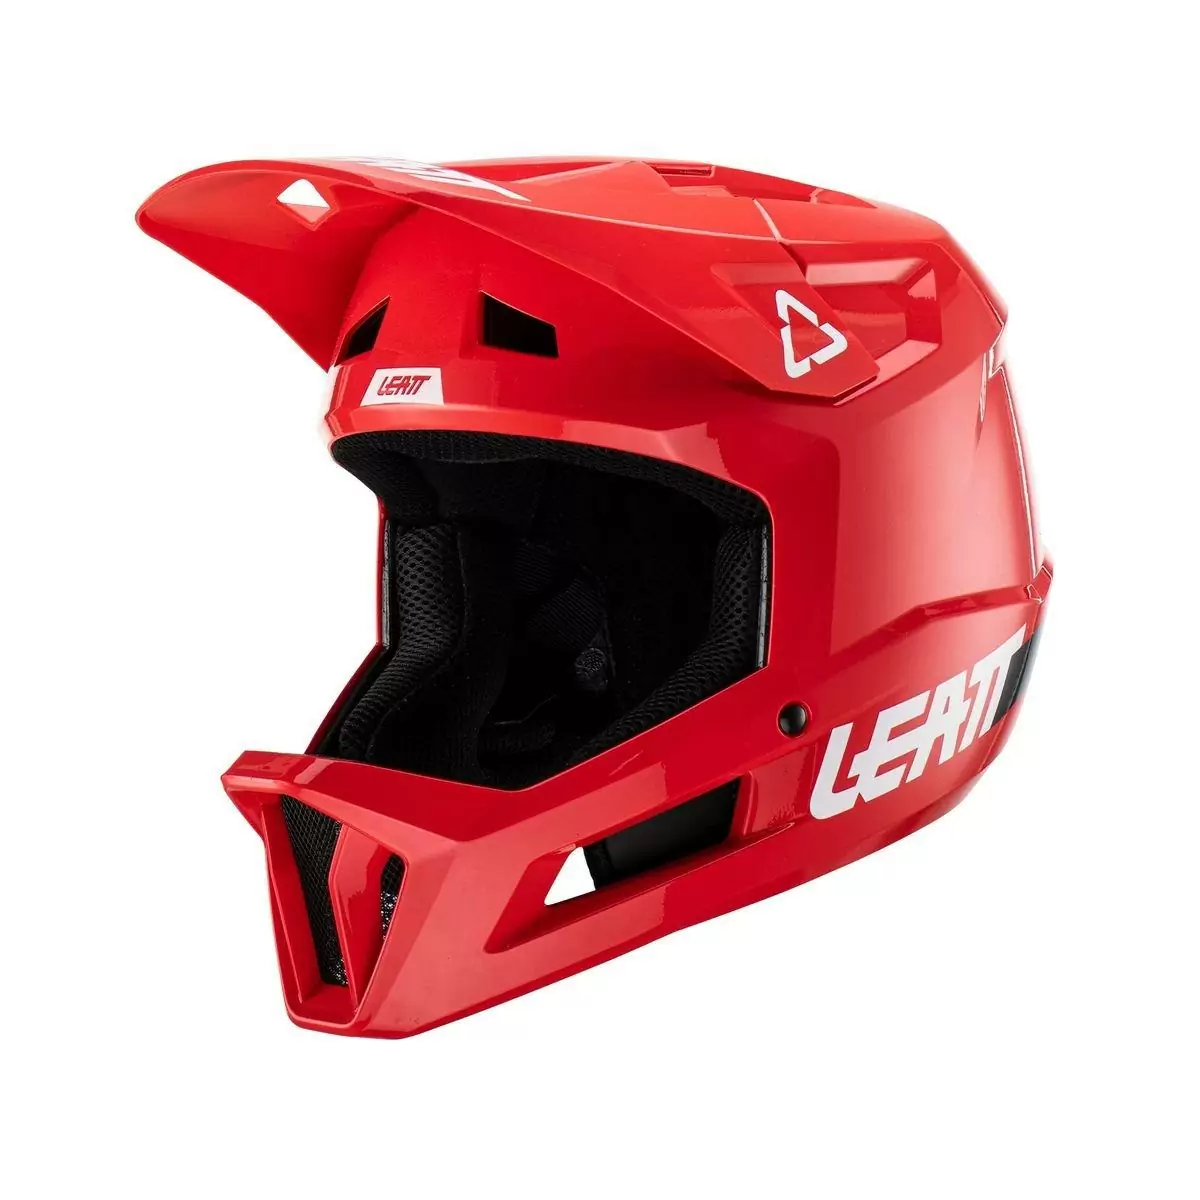 Gravity 1.0 Kids MTB Fullface Helmet Red Size XXS (51-52cm) - image